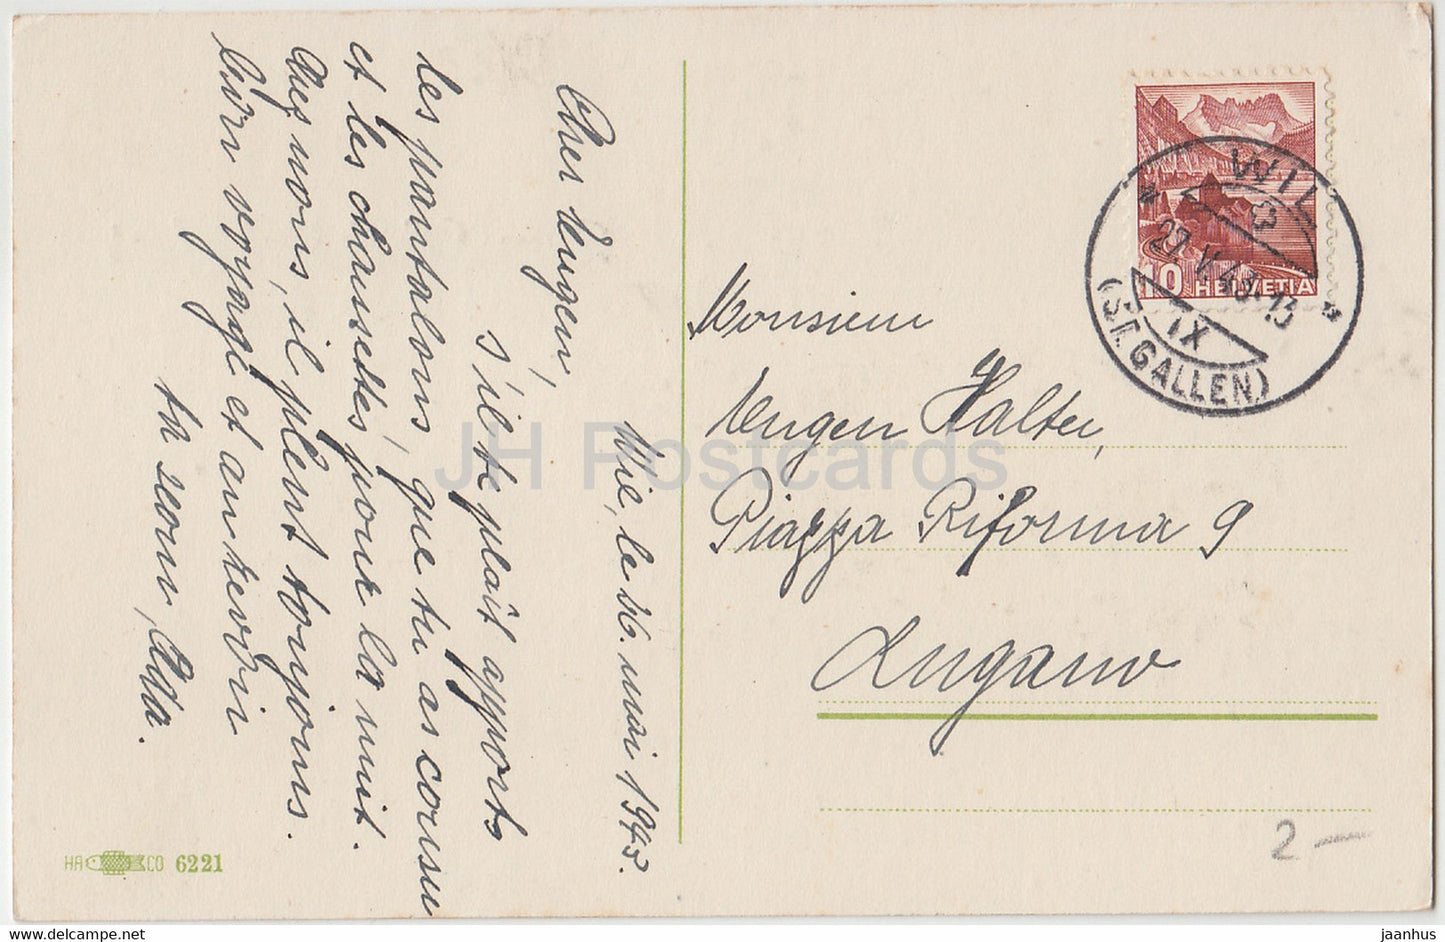 Carte de vœux du Nouvel An - Die Besten Grusse - fleurs - HA CO 6221 - carte postale ancienne - 1943 - Allemagne - utilisé